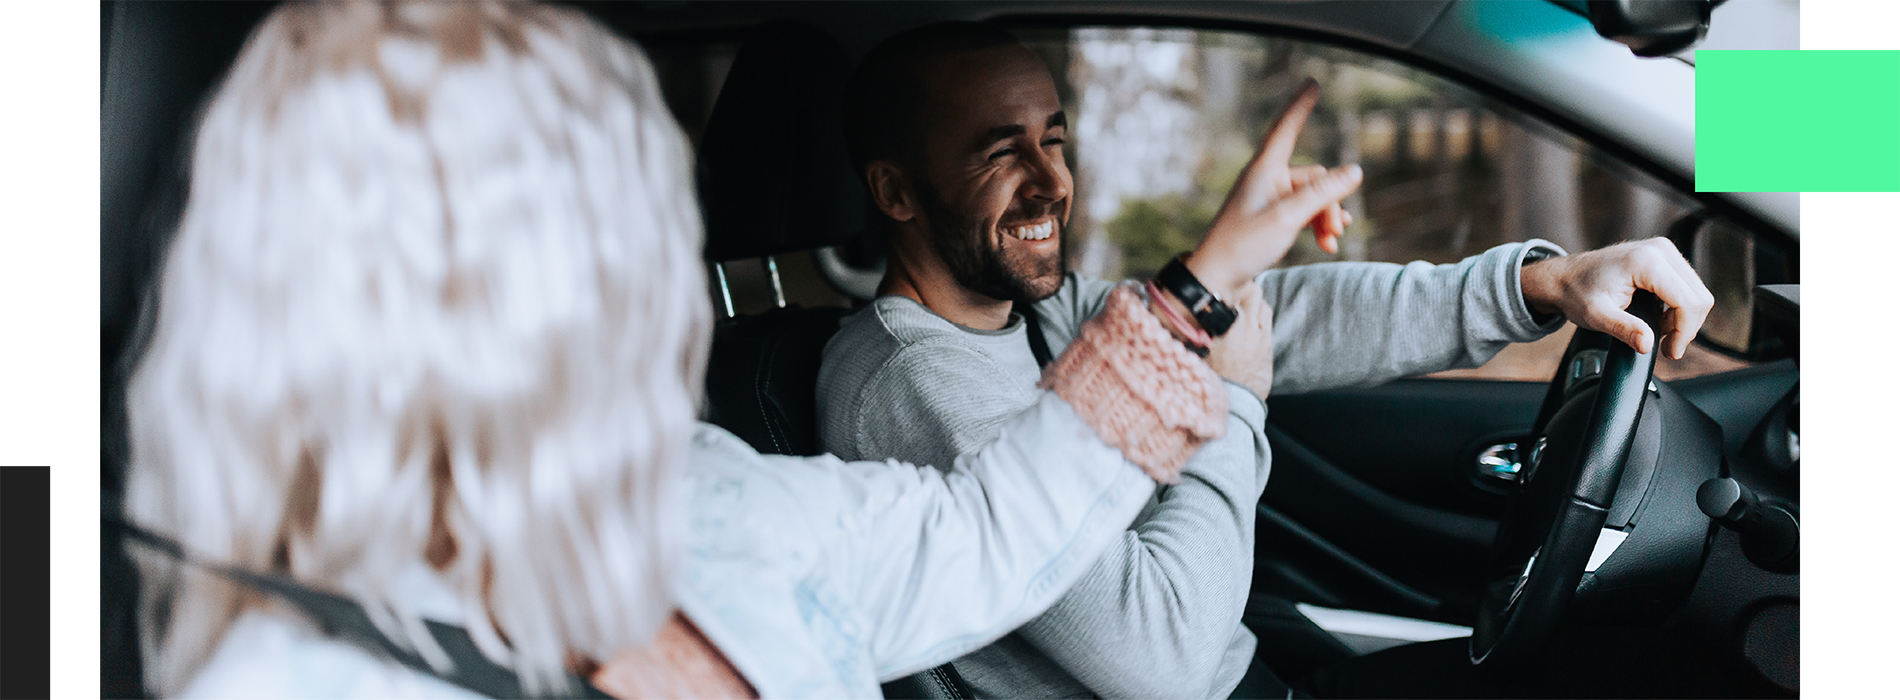 En man och en kvinna sitter i en bil och skrattar.